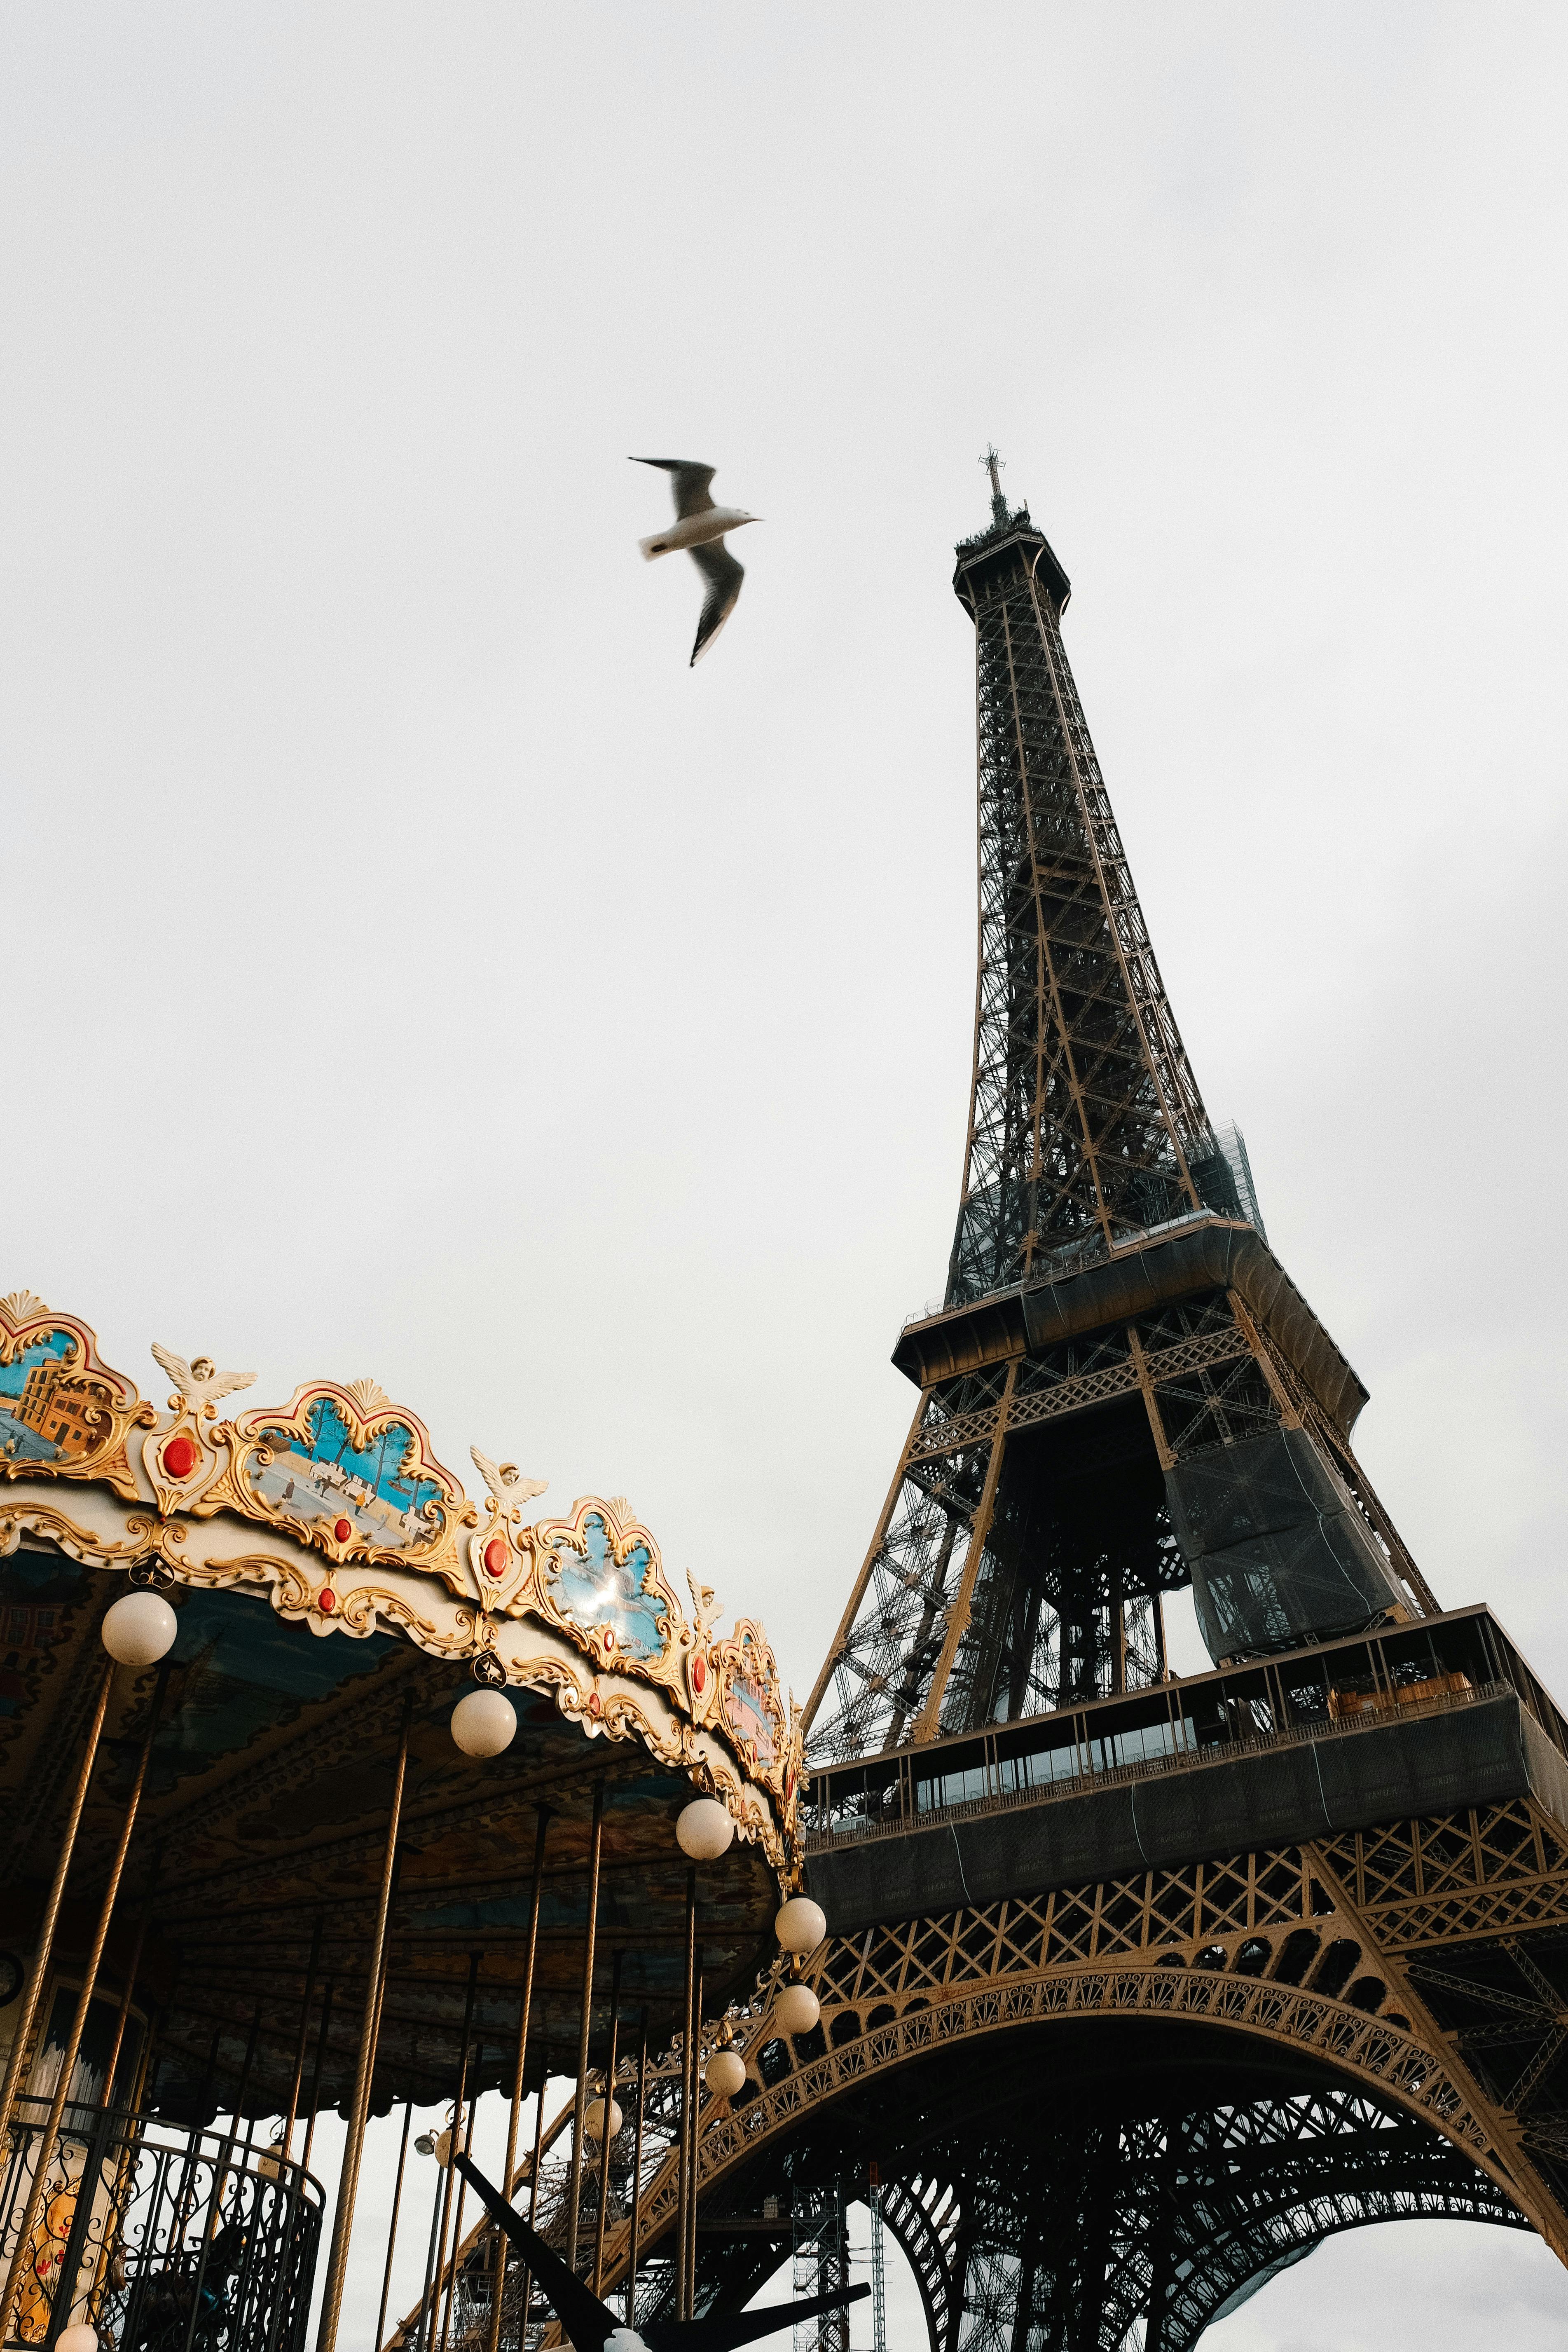 Tháp Eiffel là một công trình kiến trúc vĩ đại của Pháp, tượng trưng cho sự lãng mạn, tình yêu và một thời đại mới. Hãy cùng khám phá những góc nhìn đầy hấp dẫn về Tháp Eiffel trong hình ảnh.